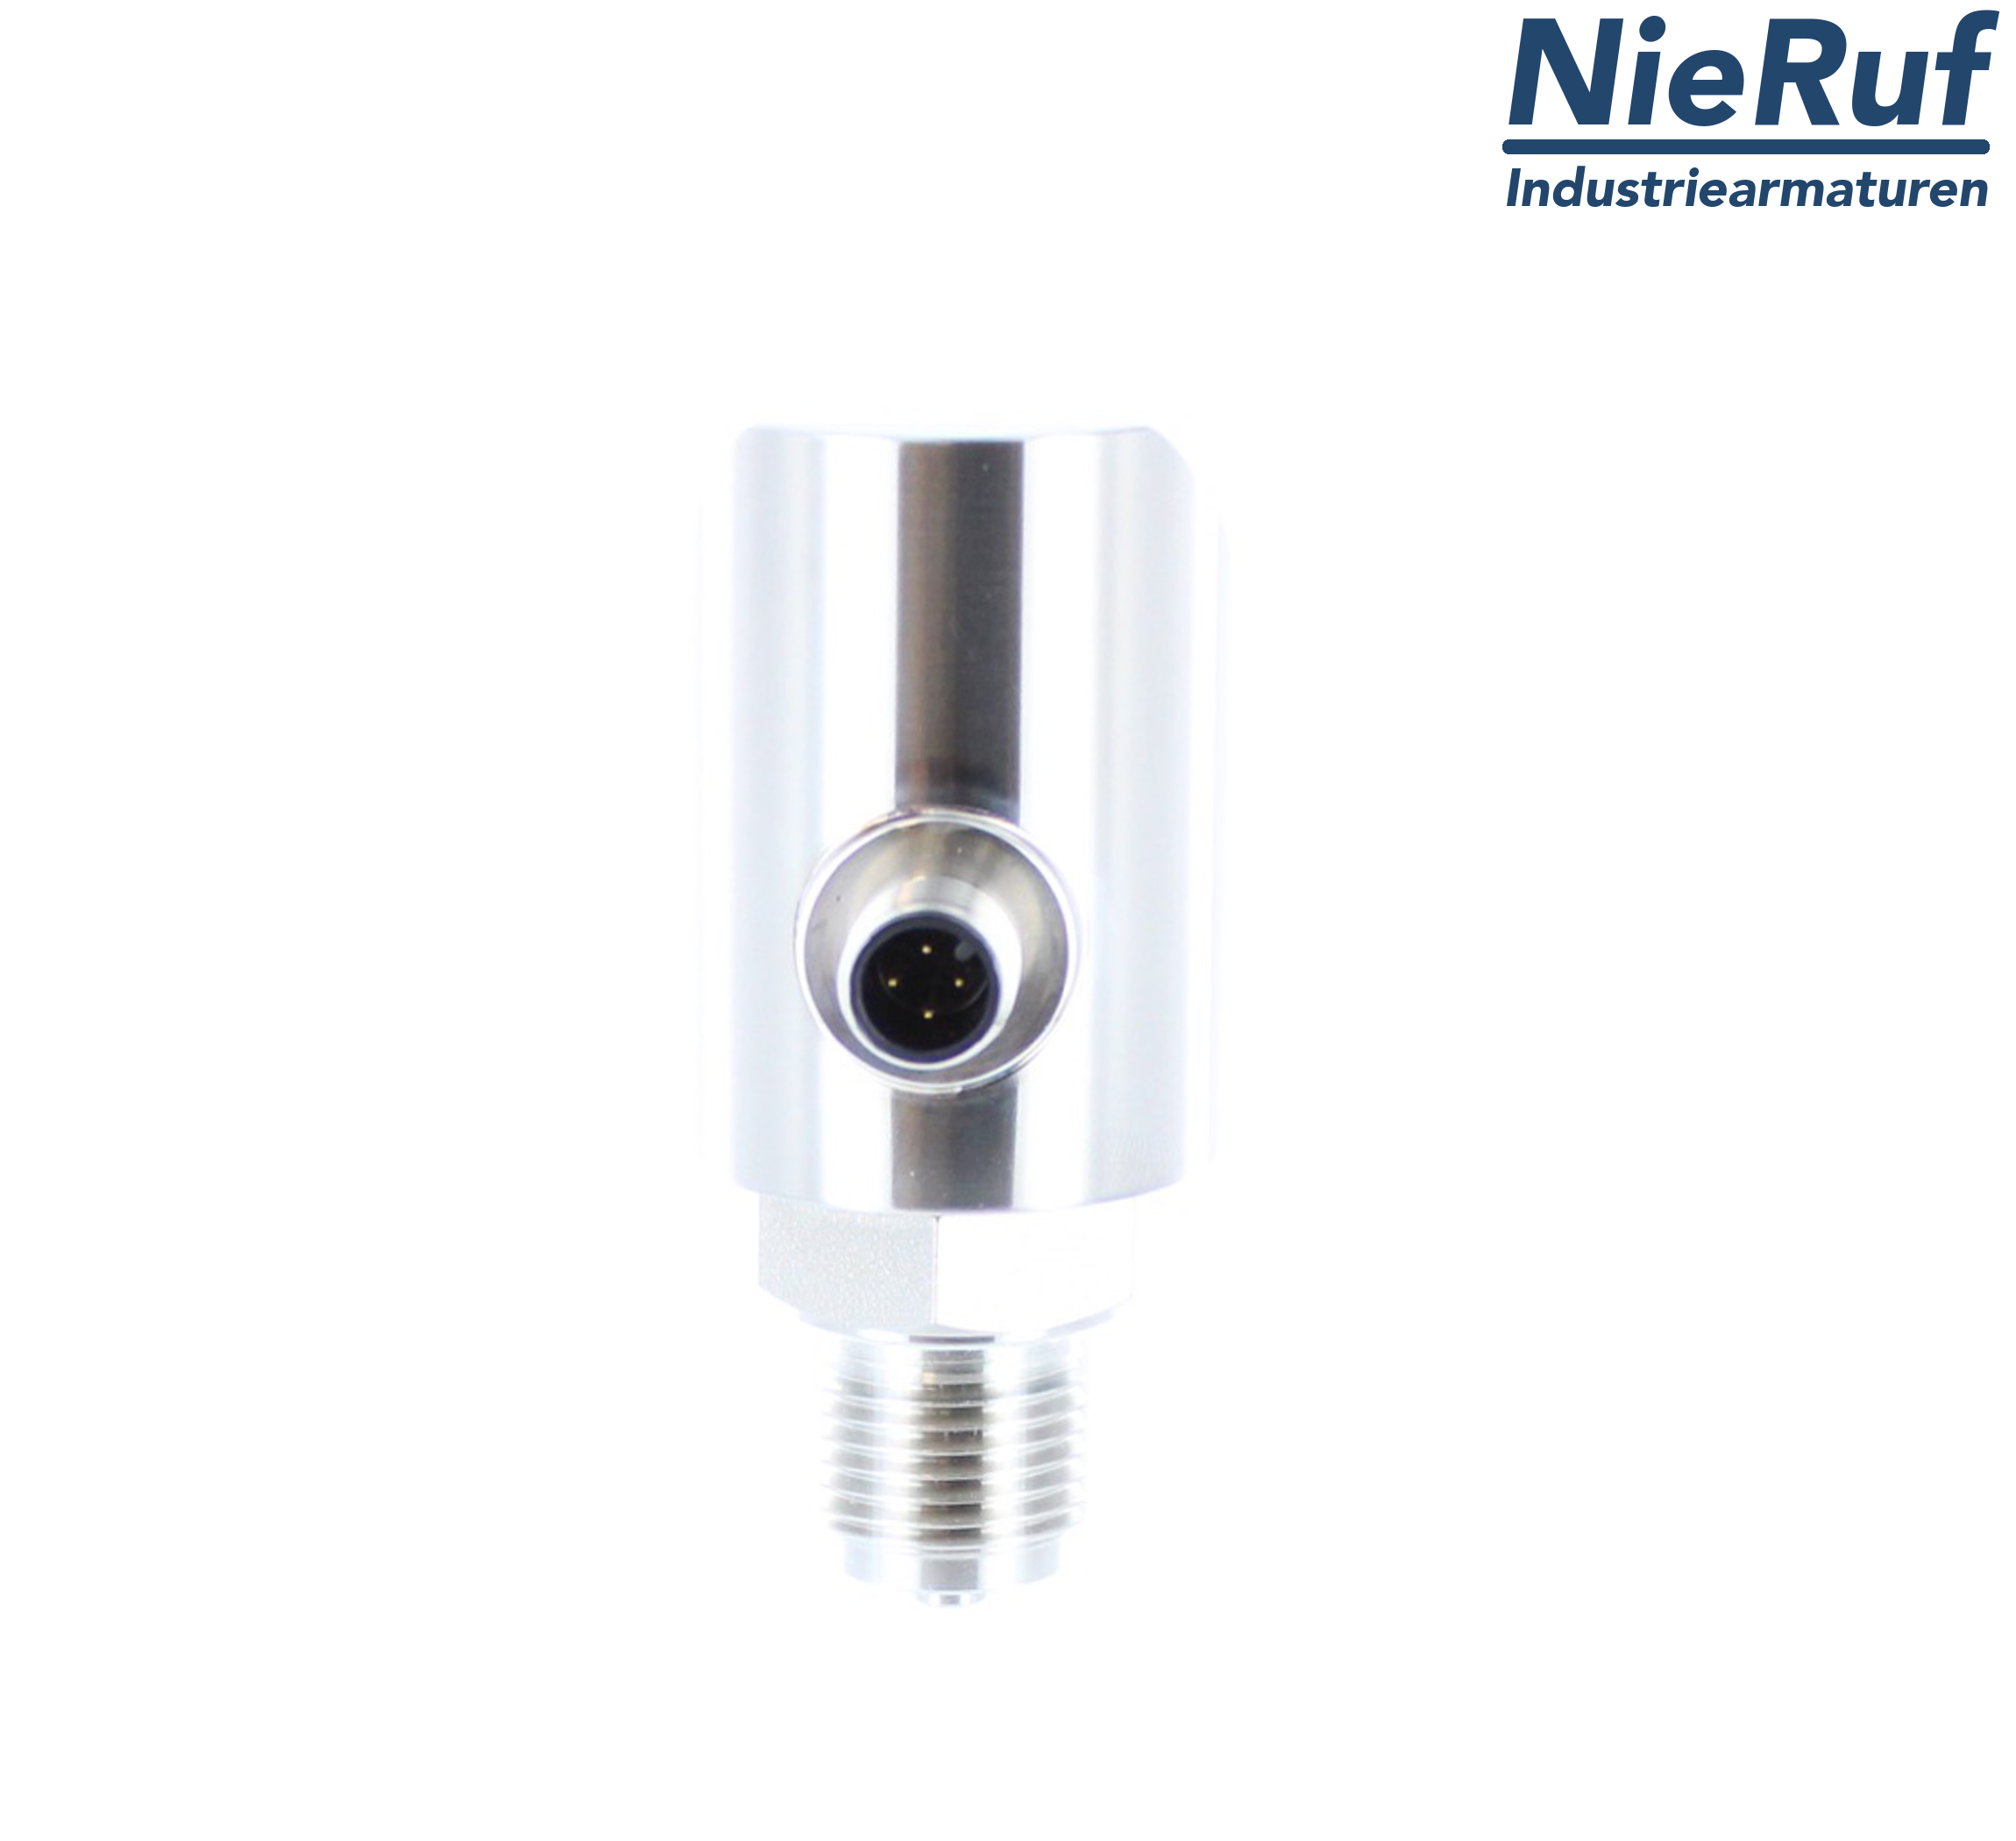 digital pressure sensor G 1/2" B 4-wire: 1xPNP, 1x4 - 20mA, Desina FPM 0,0 - 40,0 bar